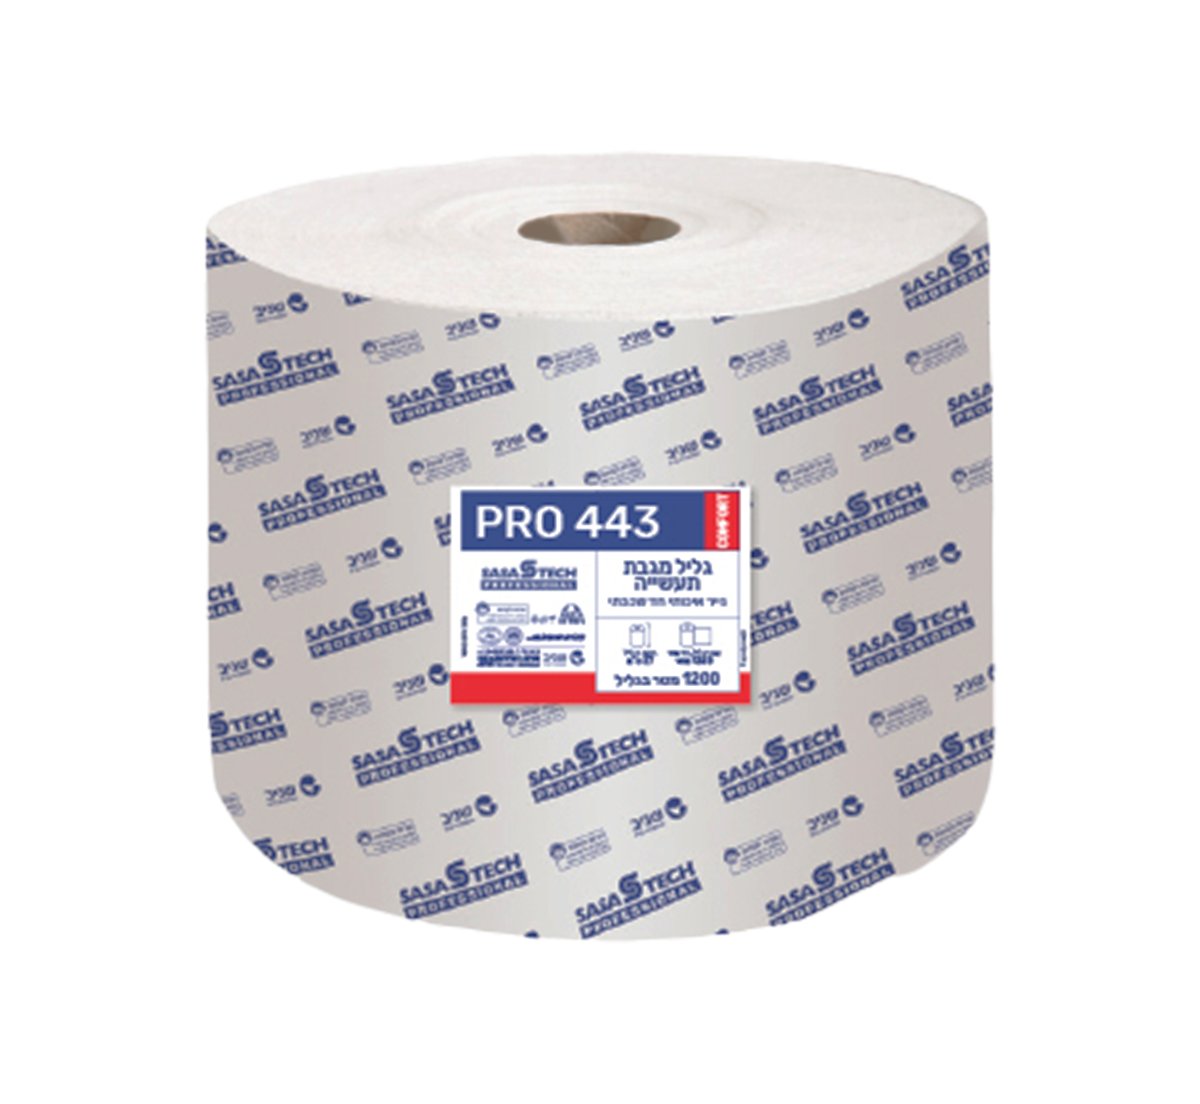 נייר מגבת תעשייתי למוסכים 28 ס"מ PRO443